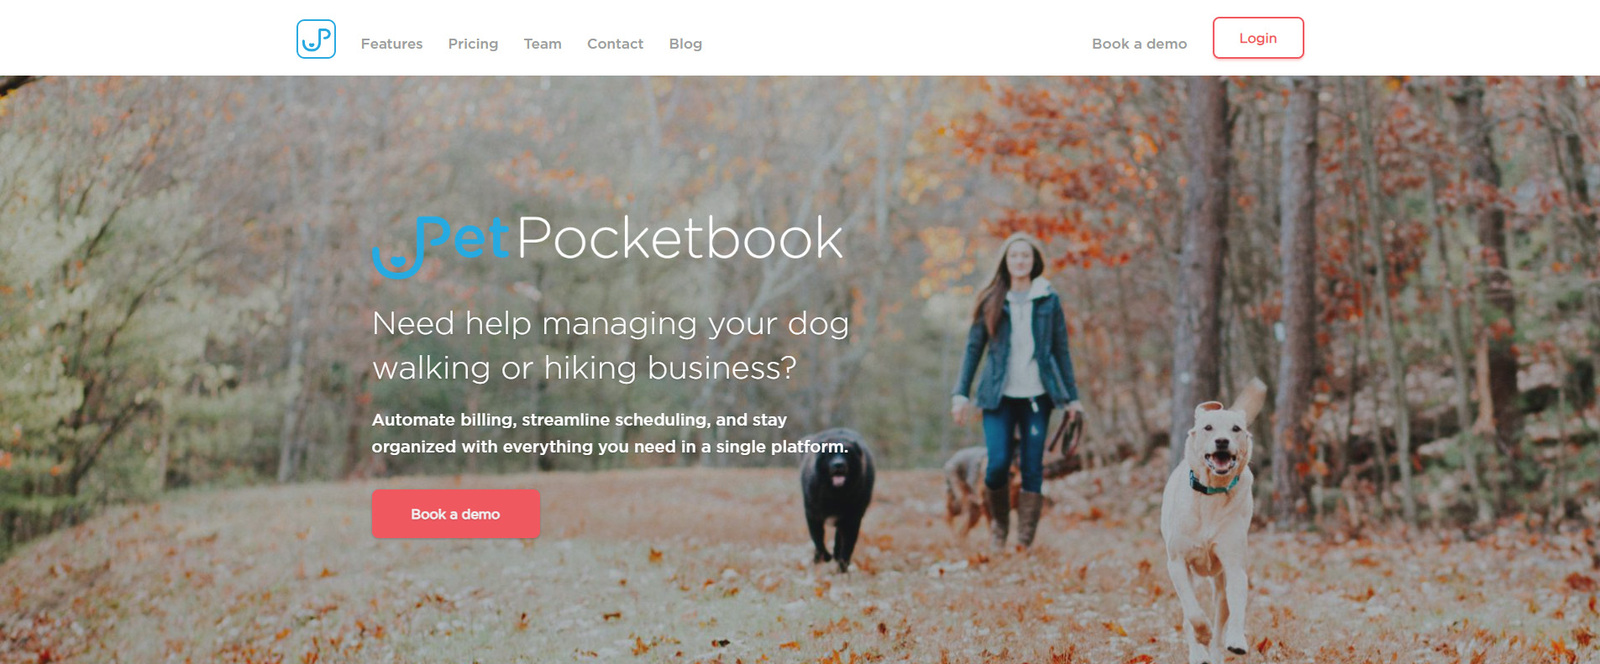 Vista de PetPocketbook, una de las mejores opciones de software de cuidado de mascotas para paseadores de mascotas.